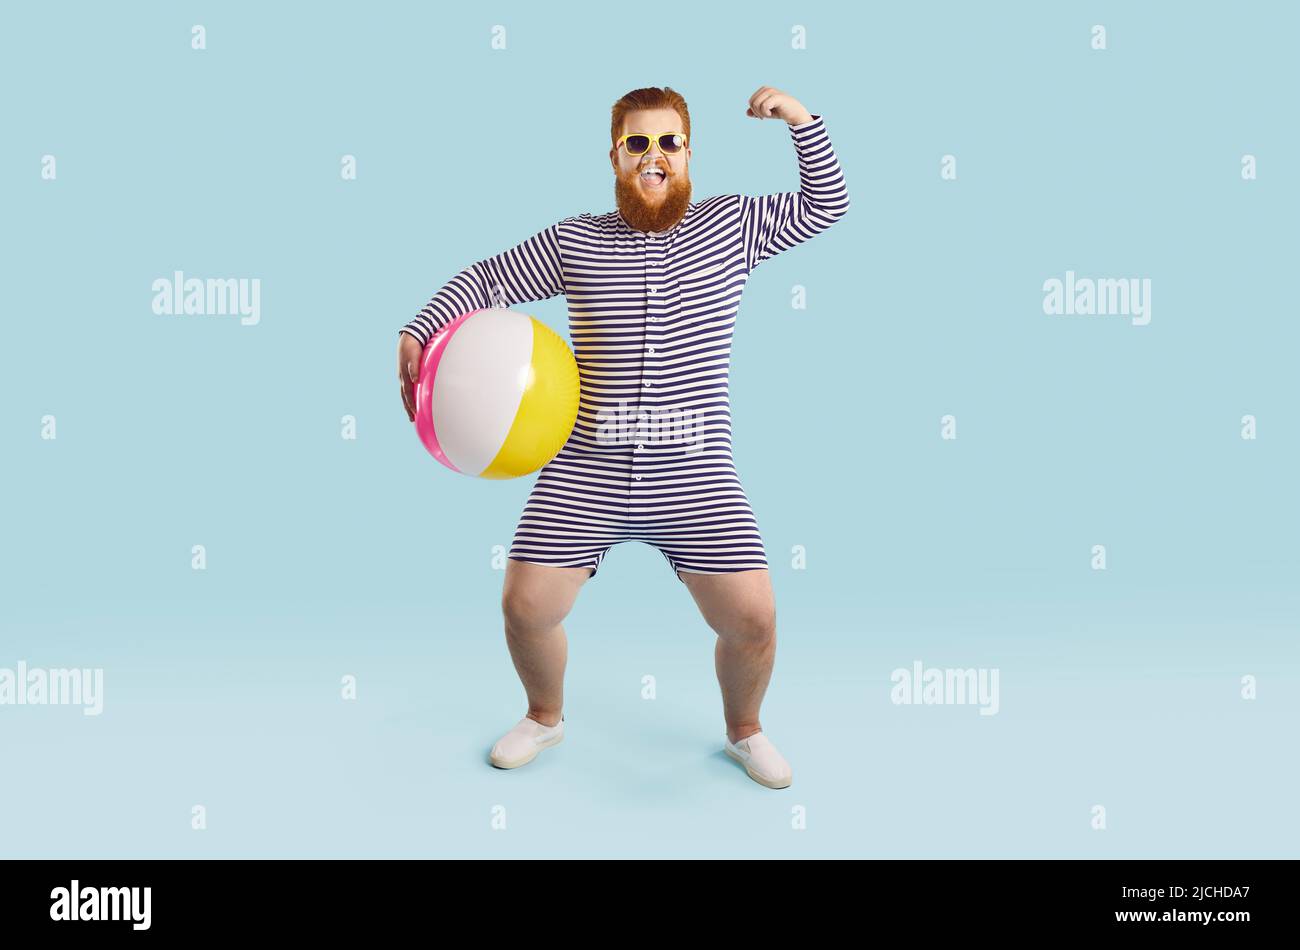 Gai drôle chubby homme avec ballon gonflable montre des muscles sur fond bleu clair. Banque D'Images